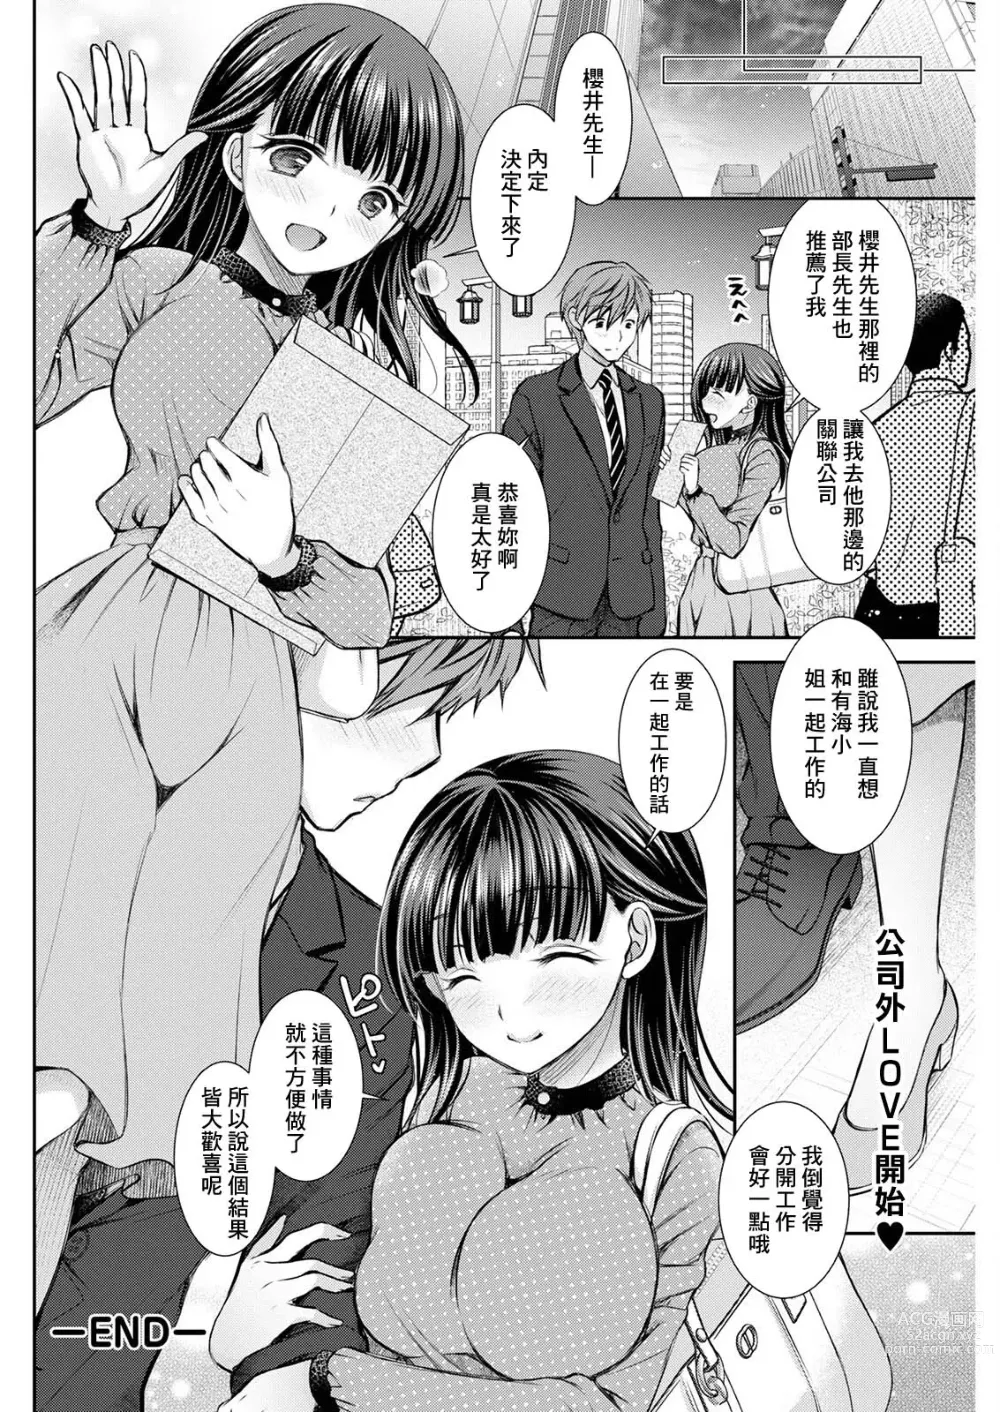 Page 18 of manga Wazawai Tenjite